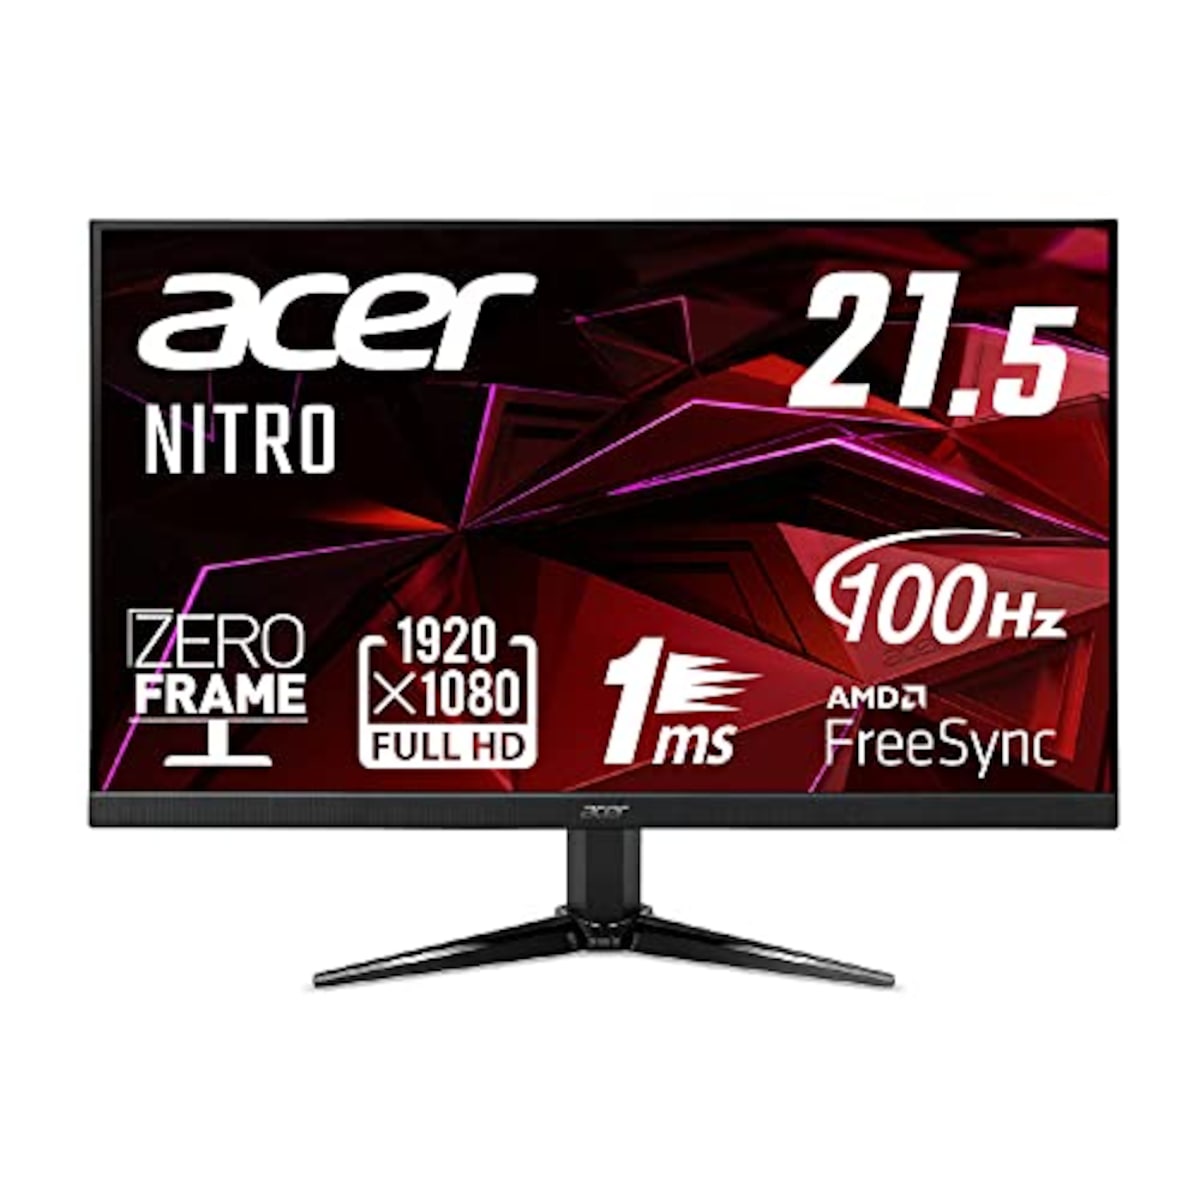 日本エイサー 【Amazon.co.jp限定】 Acer Nitro ゲーミングモニター 21.5インチ VA 非光沢 フルHD 100Hz 1ms(VRB) HDMI ミニD-Sub15 VESAマウント対応 スピーカー内蔵 ヘッドホン端子 AMD FreeSync QG221QHbmiix PC/PS4/Switch向き